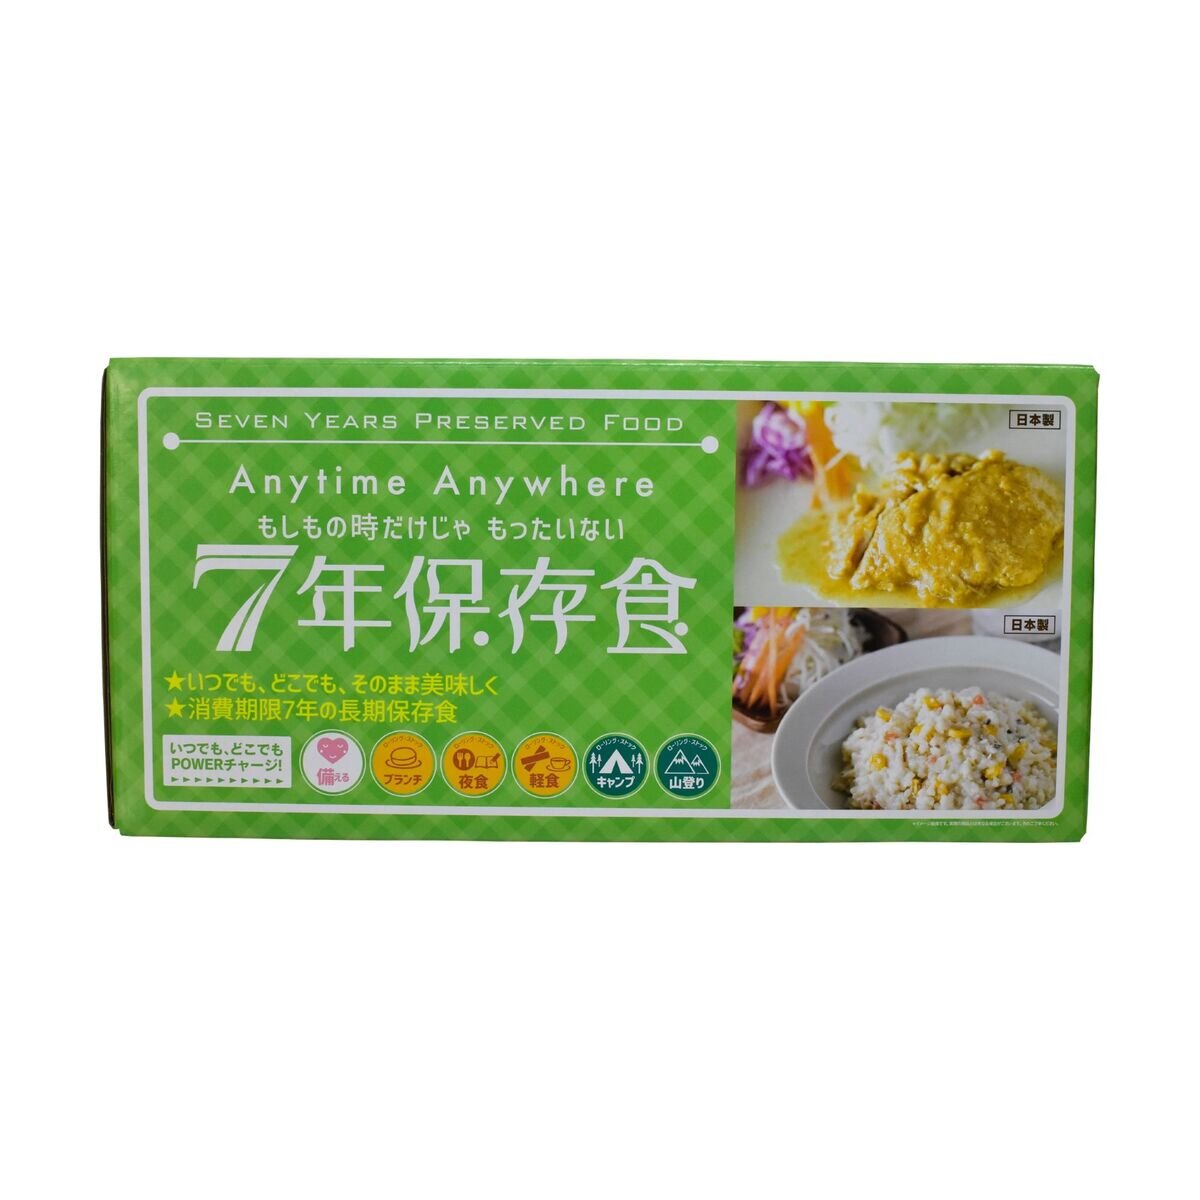 7年保存レトルト食品 9日分セット (27食入り) | Costco Japan